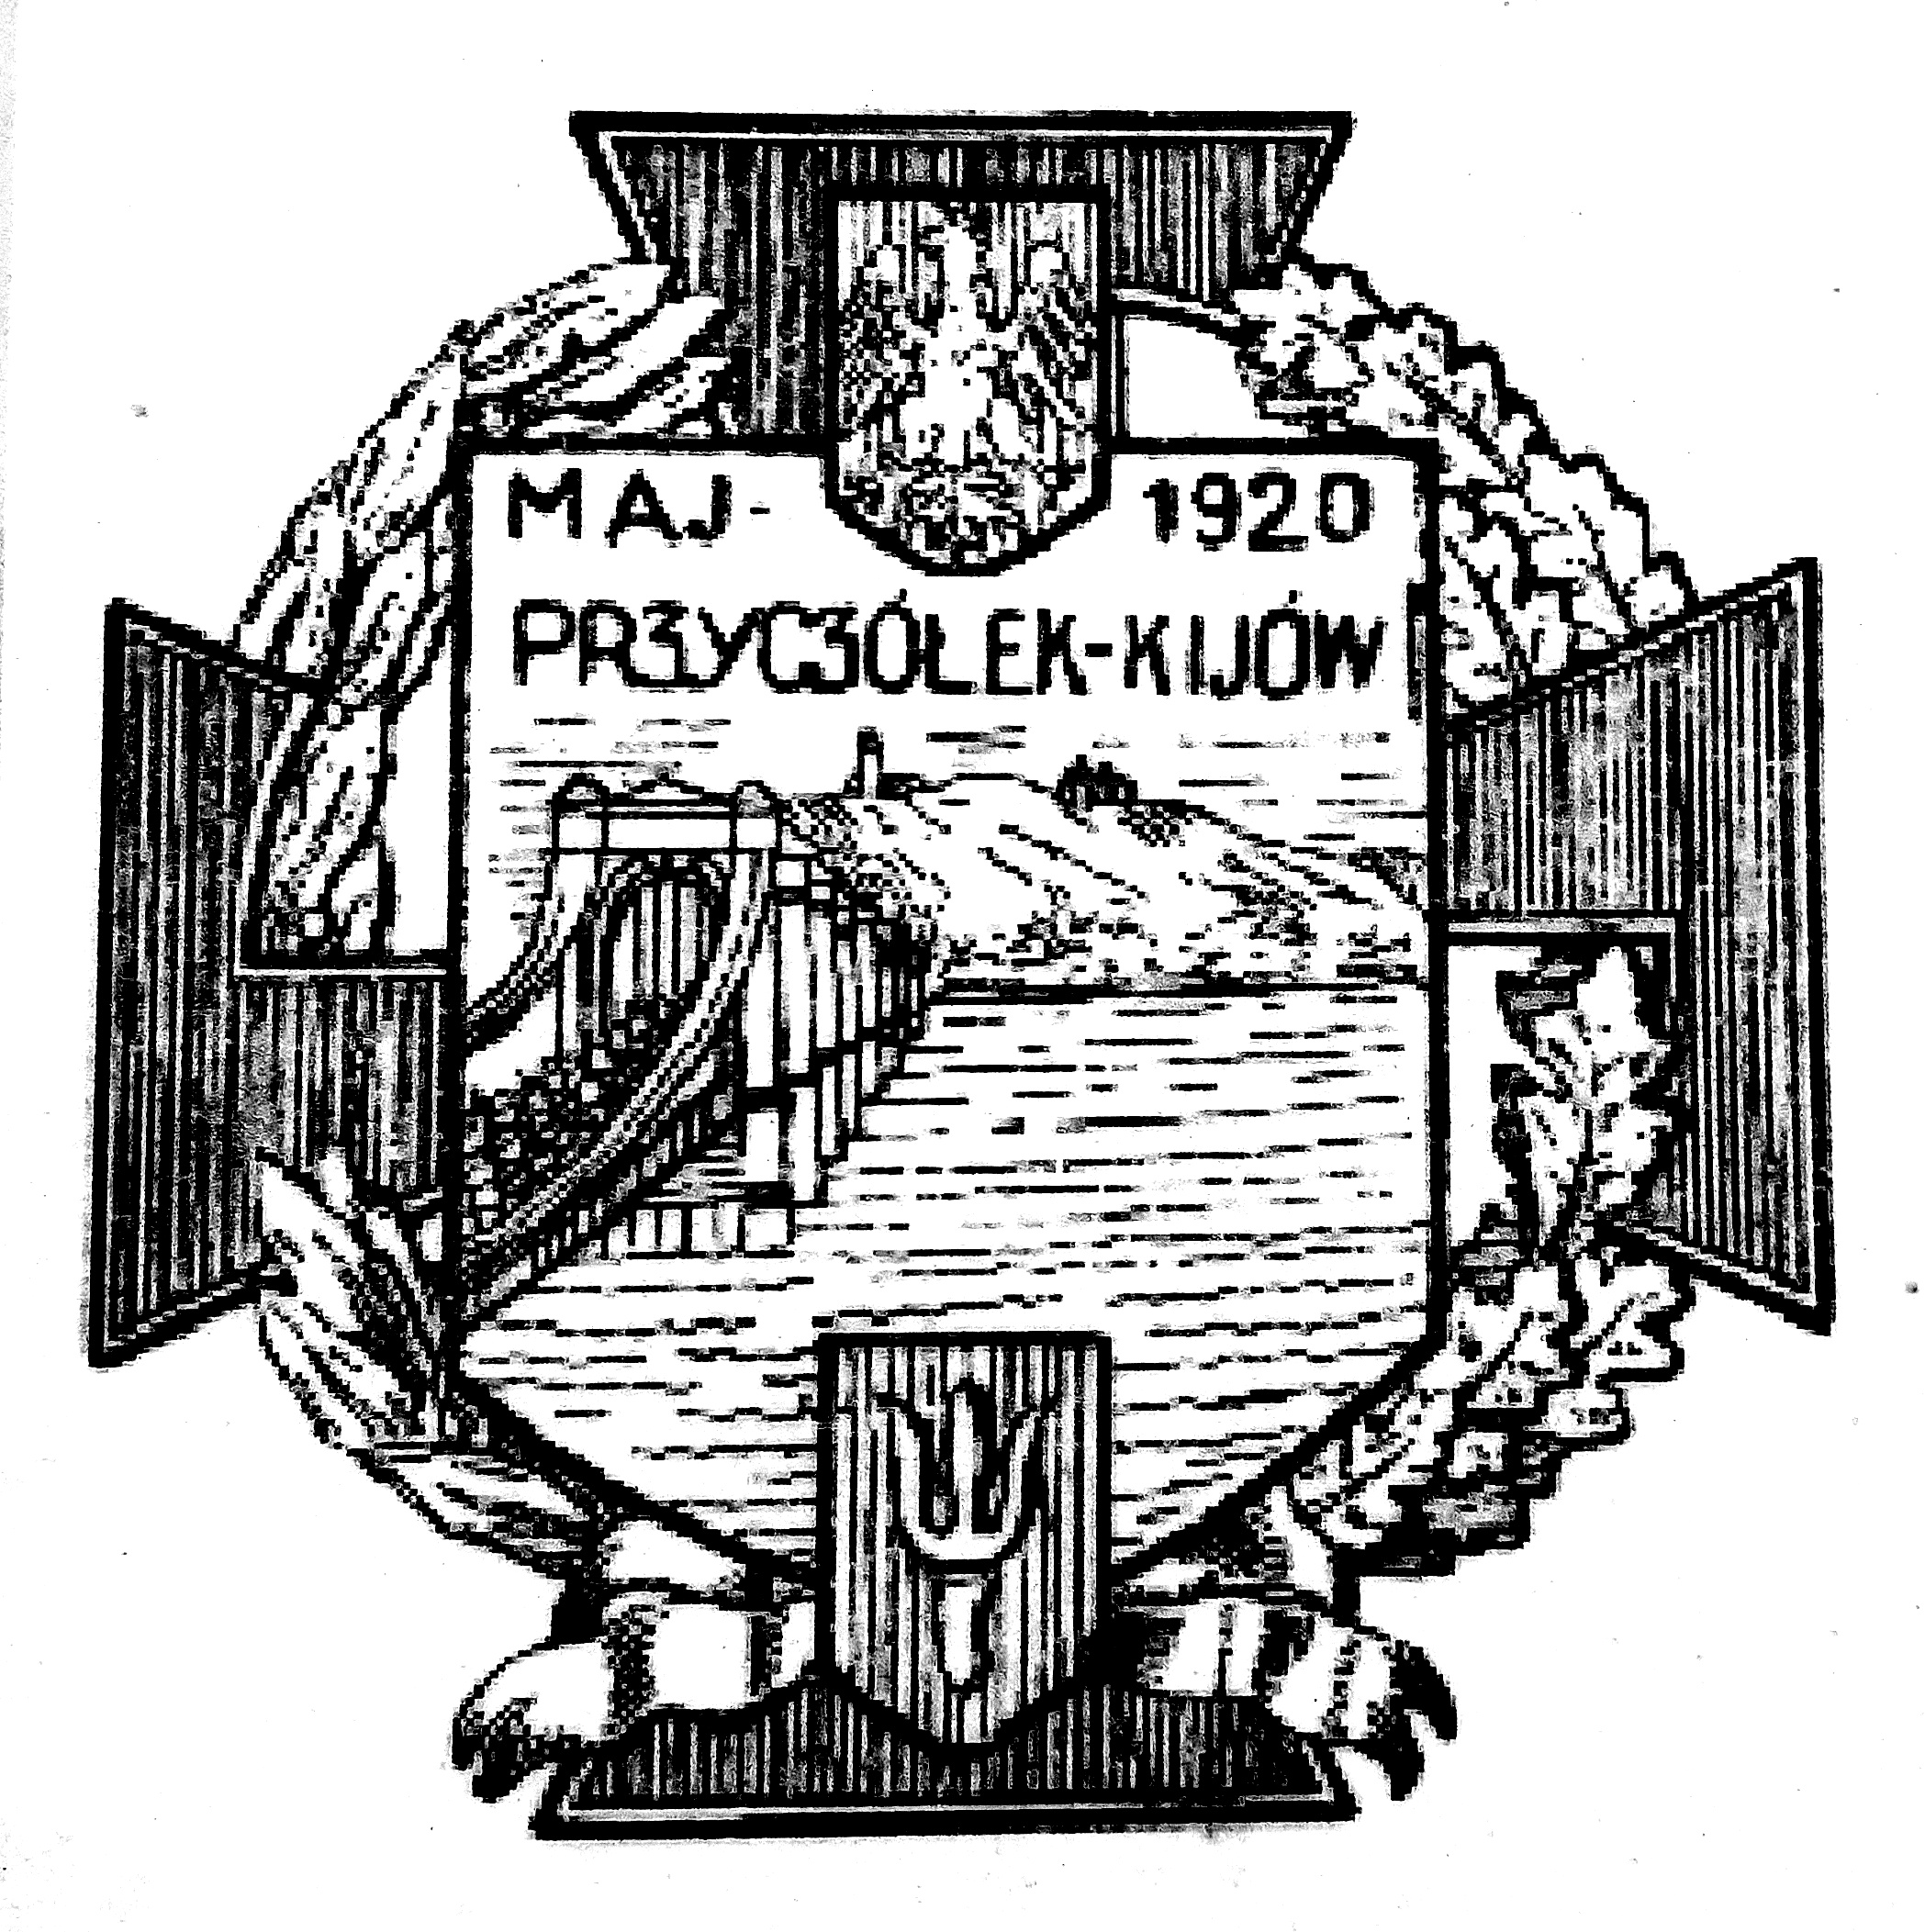 File Odznaka Przyczolek Kijow W B Jpg Wikimedia Commons